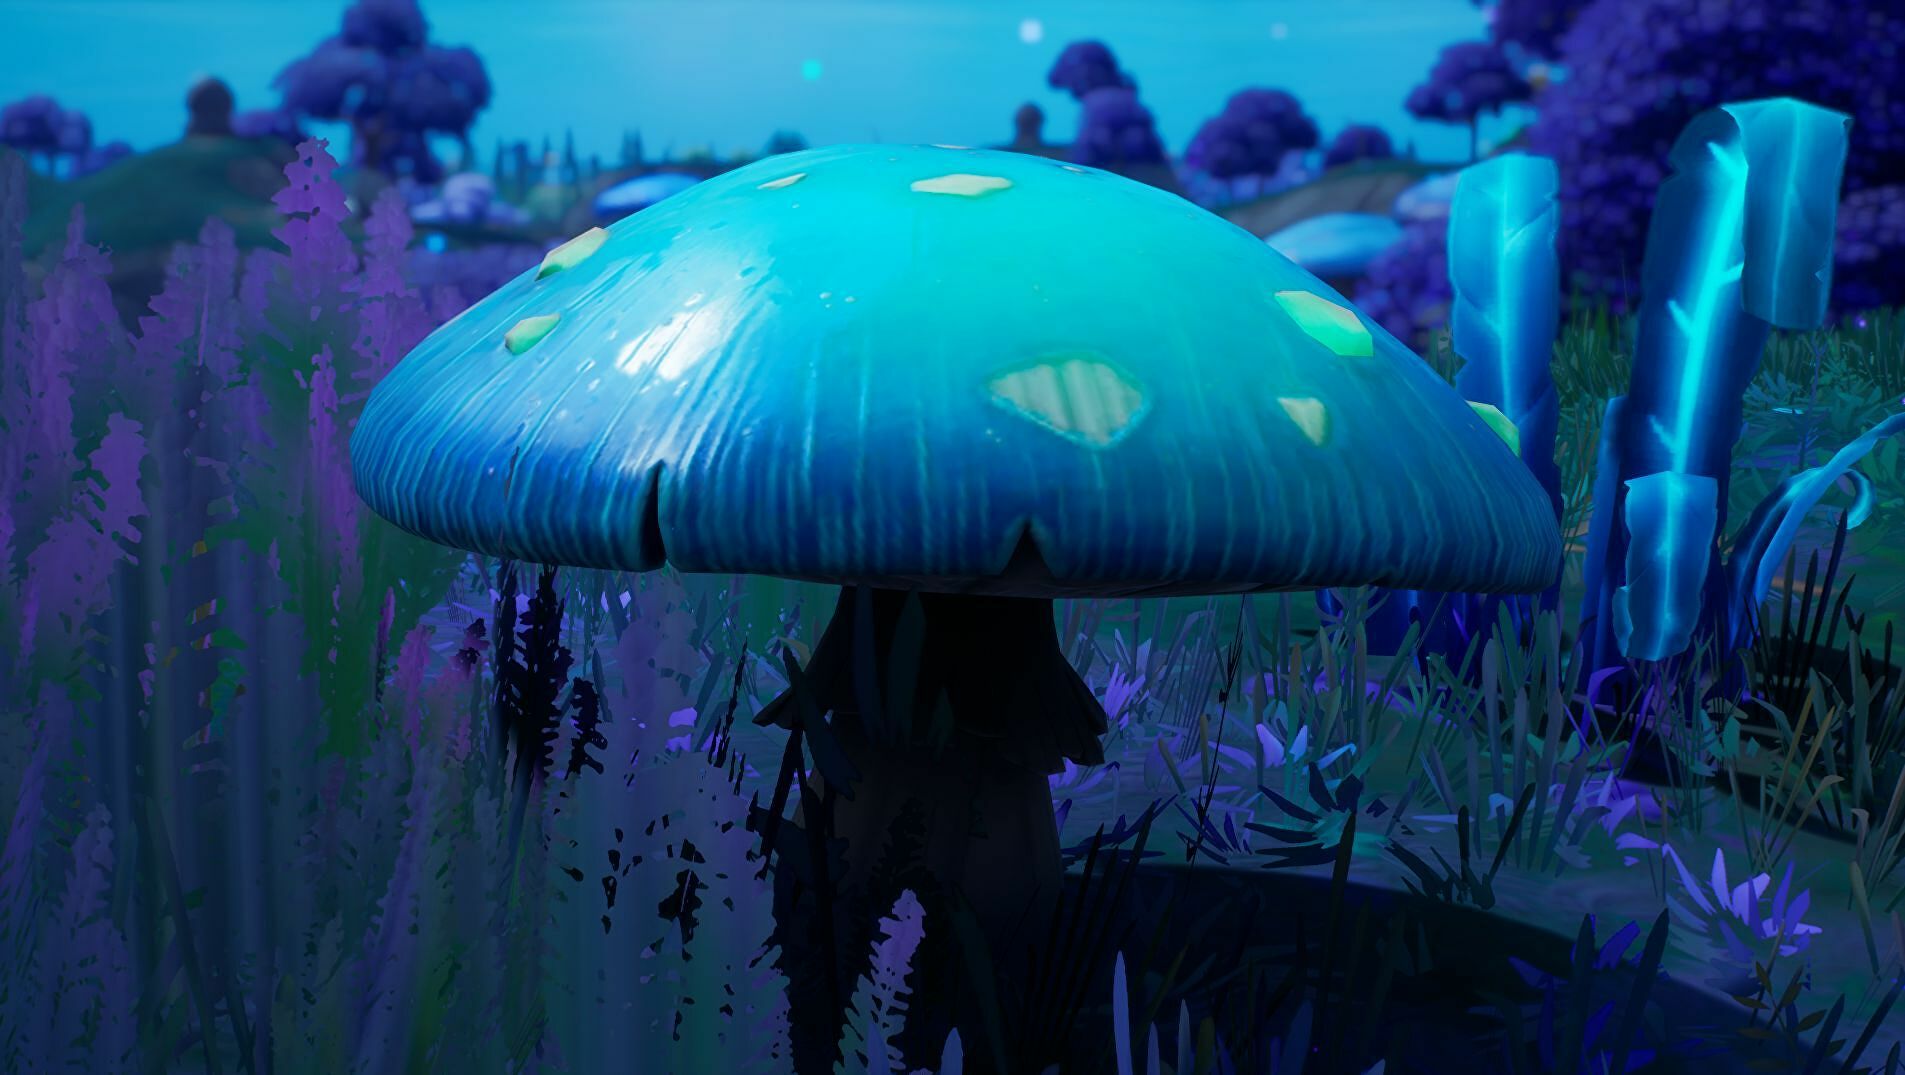 Afbeeldingen van Fortnite: Slurp Bouncer Mushrooms locatie en hoe shield krijgen door te bouncen uitgelegd